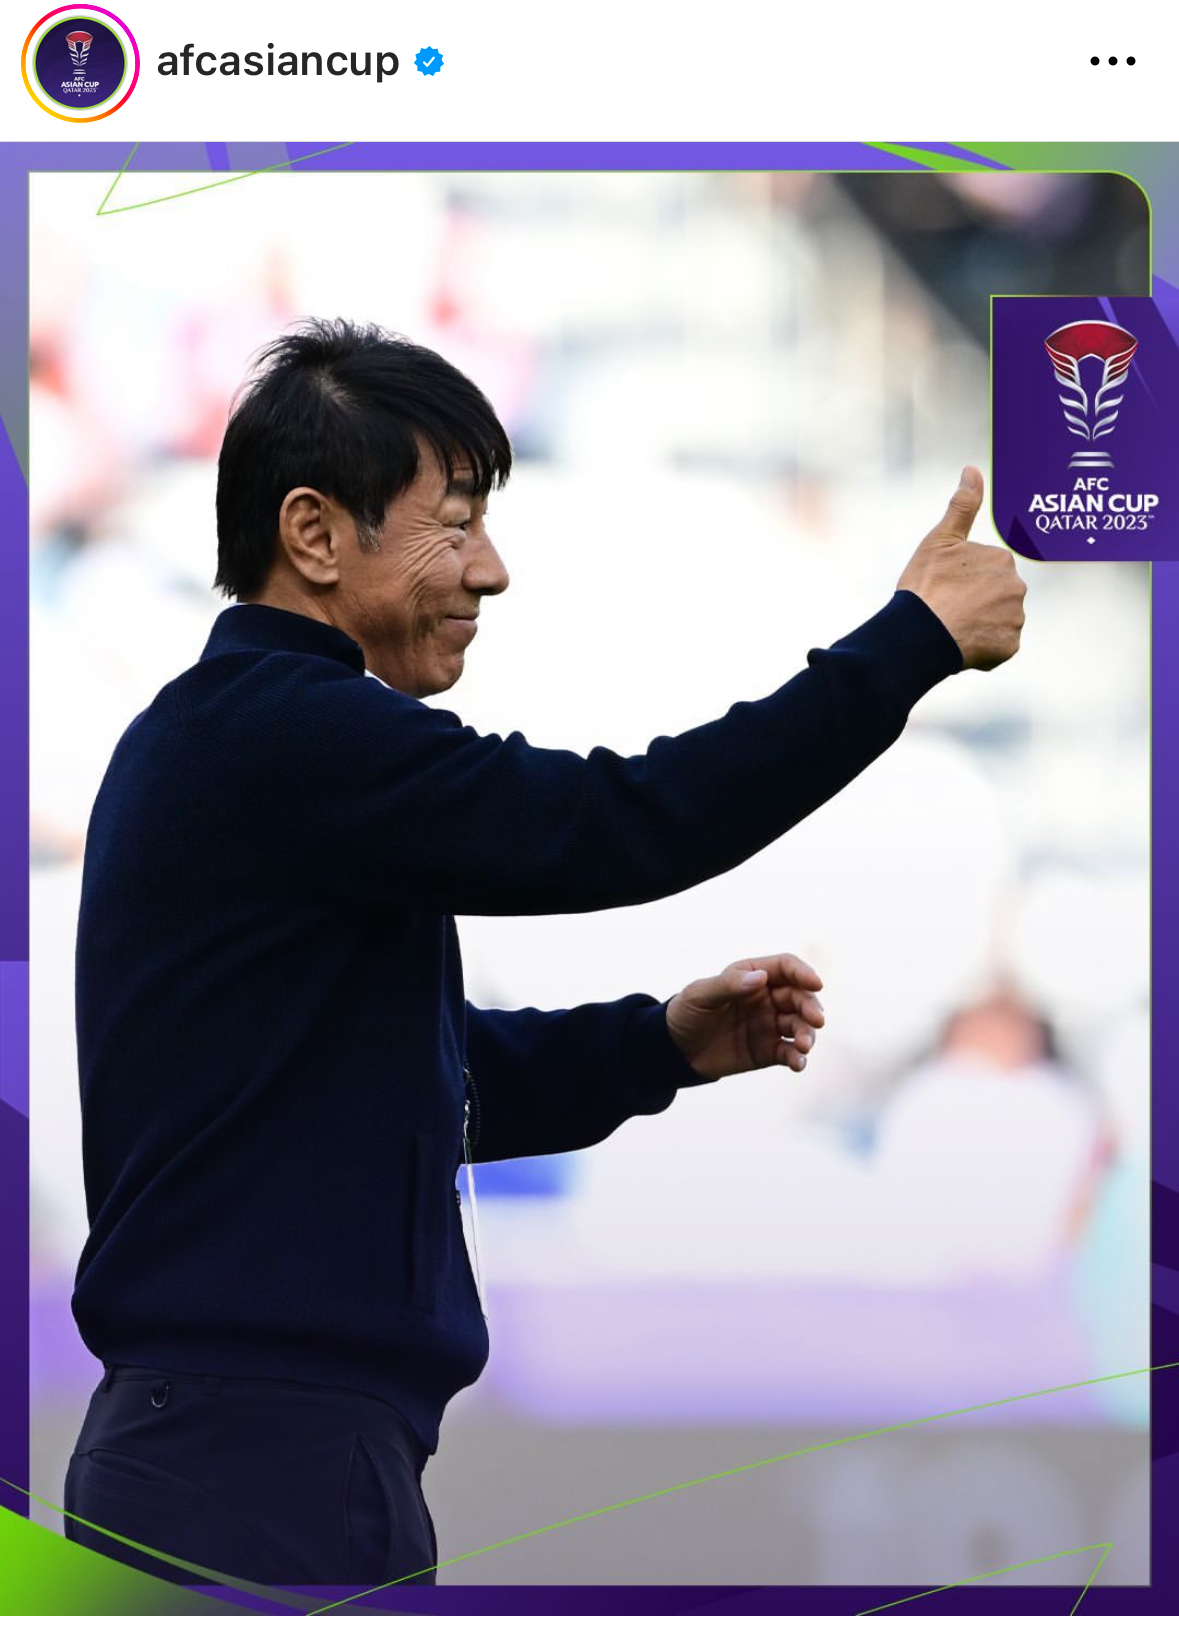 AFC 2023아시안컵 공식 계정에 게재된 신태용 감독